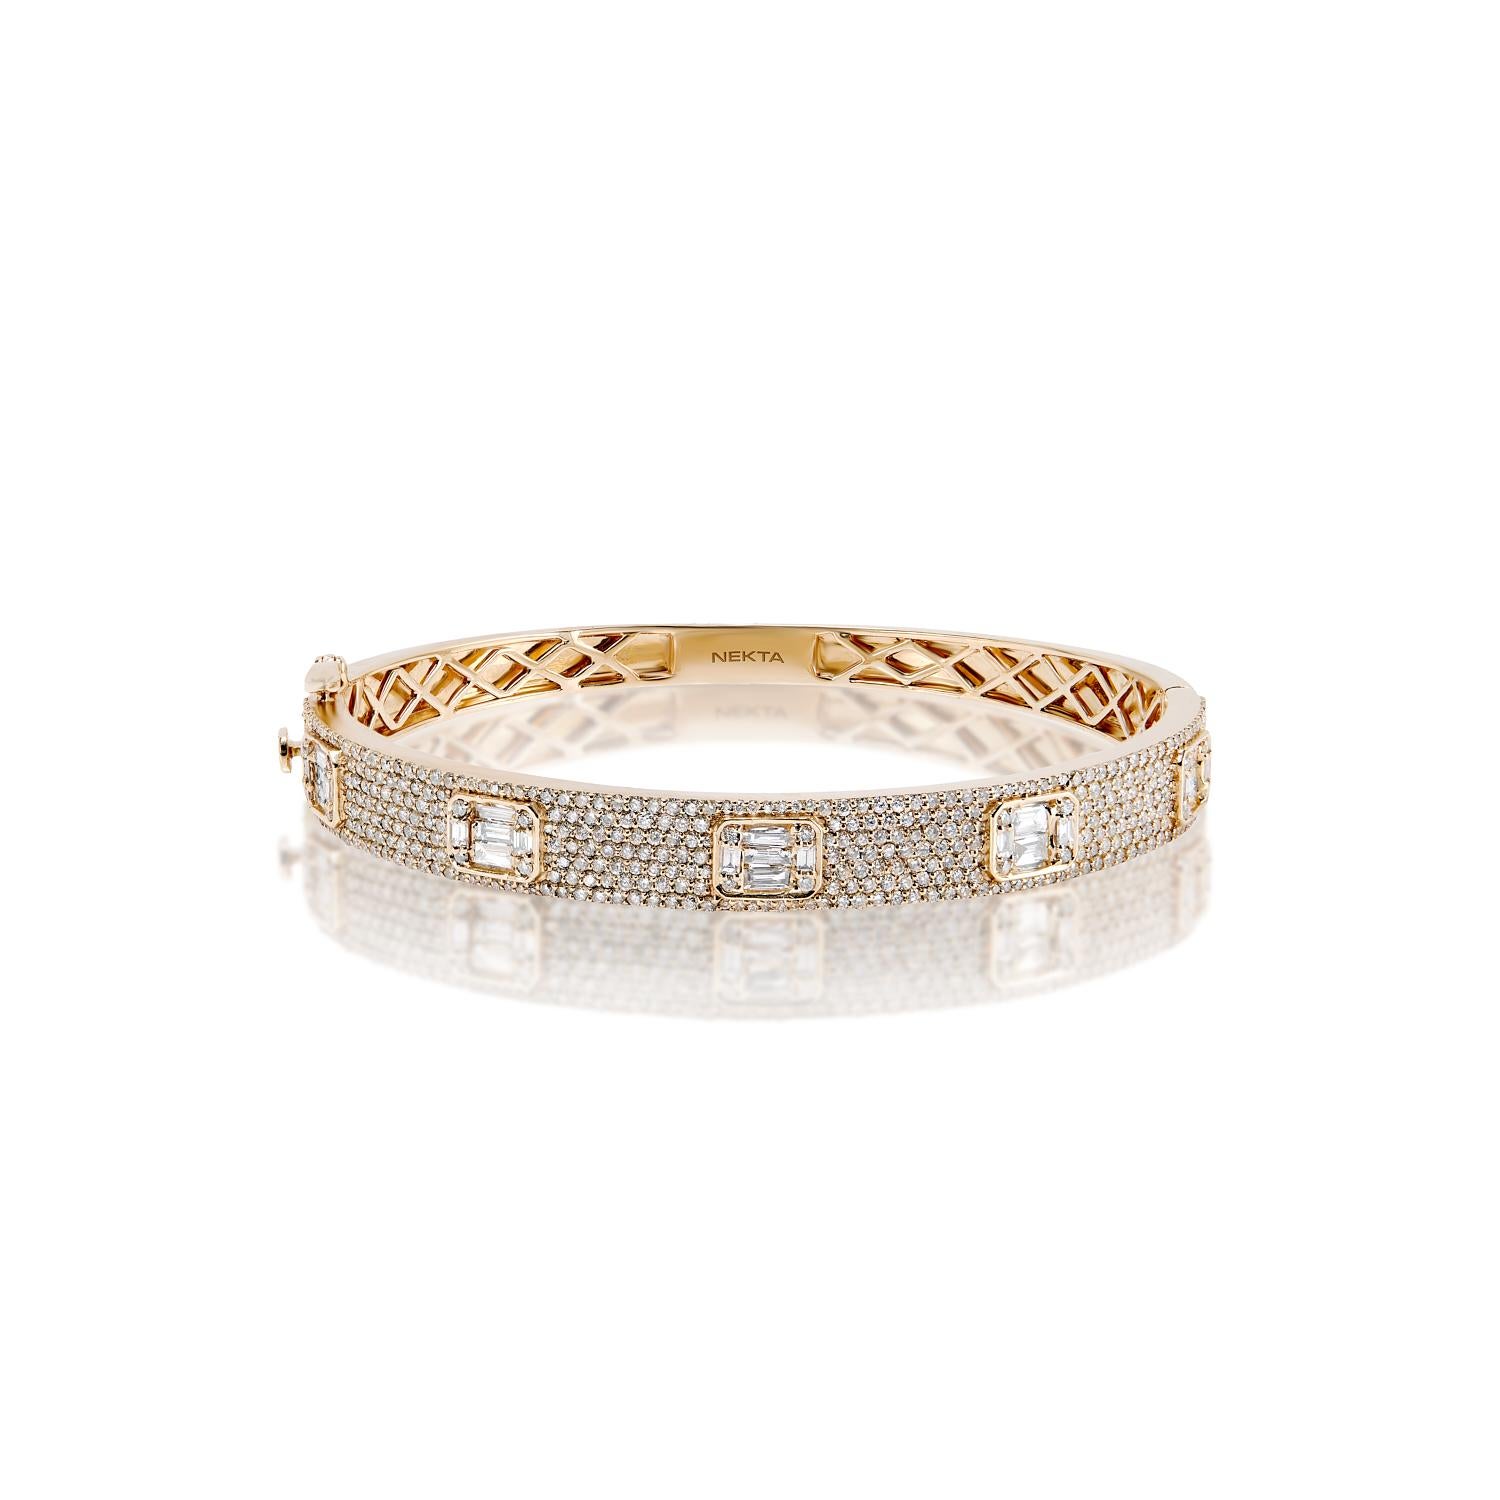 Le bracelet RAMONA 3 Carat Diamond Bangle présente des DIAMONDS COMBINE MIX SHAPE brillants pesant au total environ 3,30 carats, sertis dans de l'or rose 14K.

Le style :
Diamants
Taille du diamant : 3,30 carats
Forme de diamant : Combinez la forme